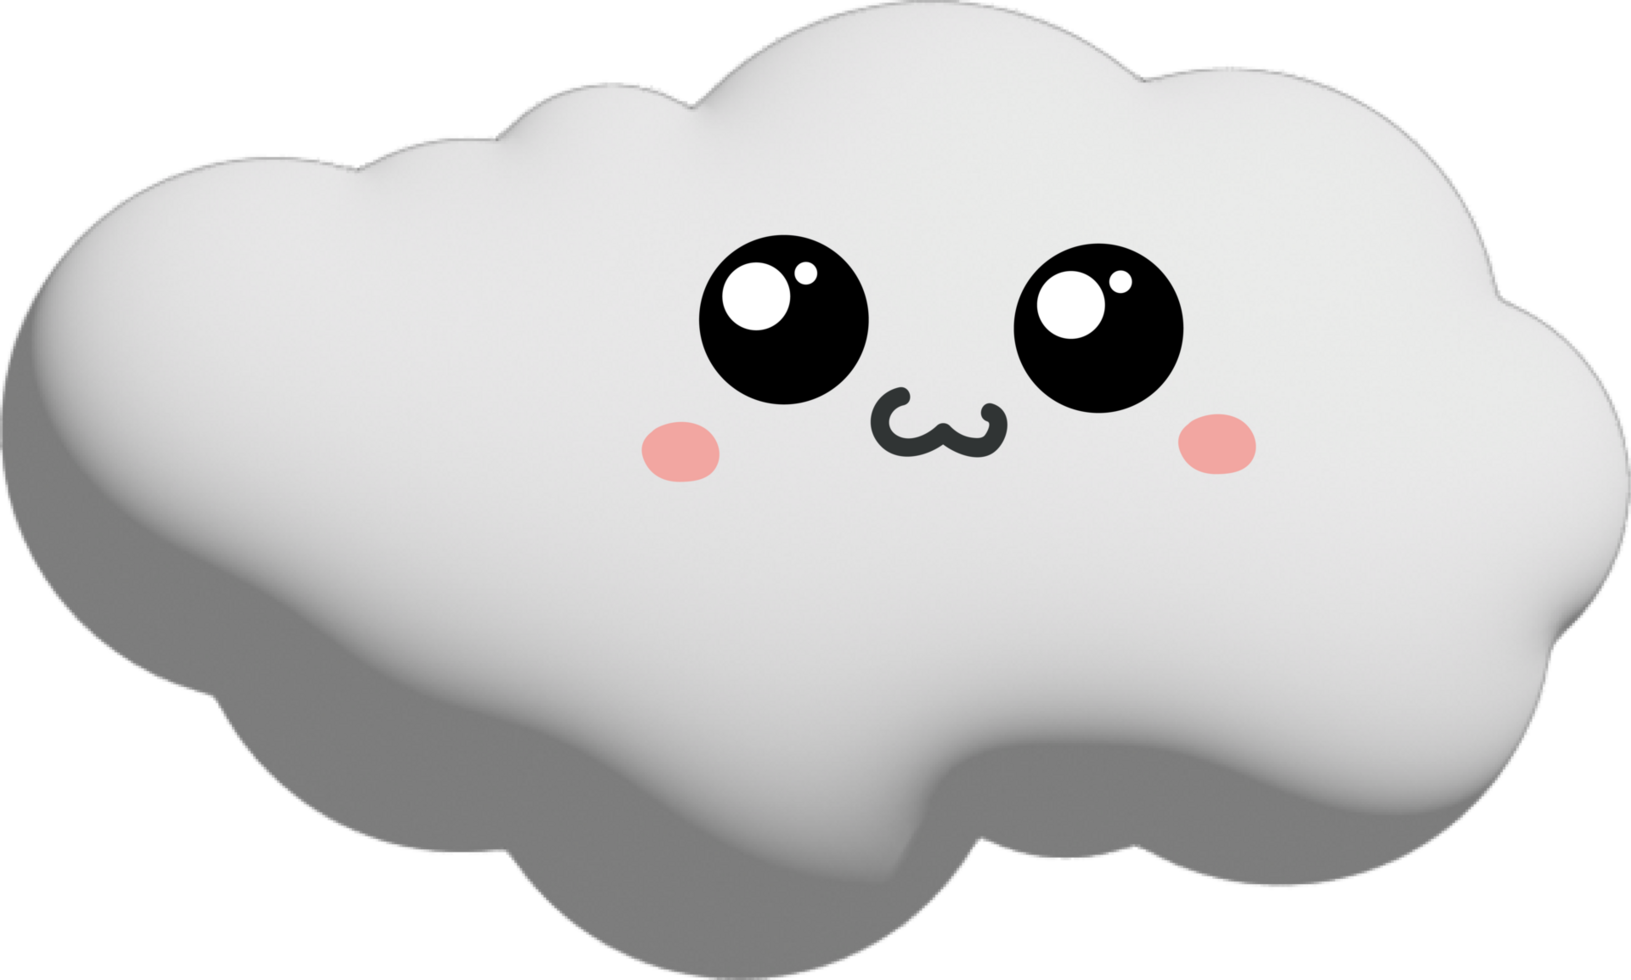 vit moln tecknad serie karaktär beskärning png